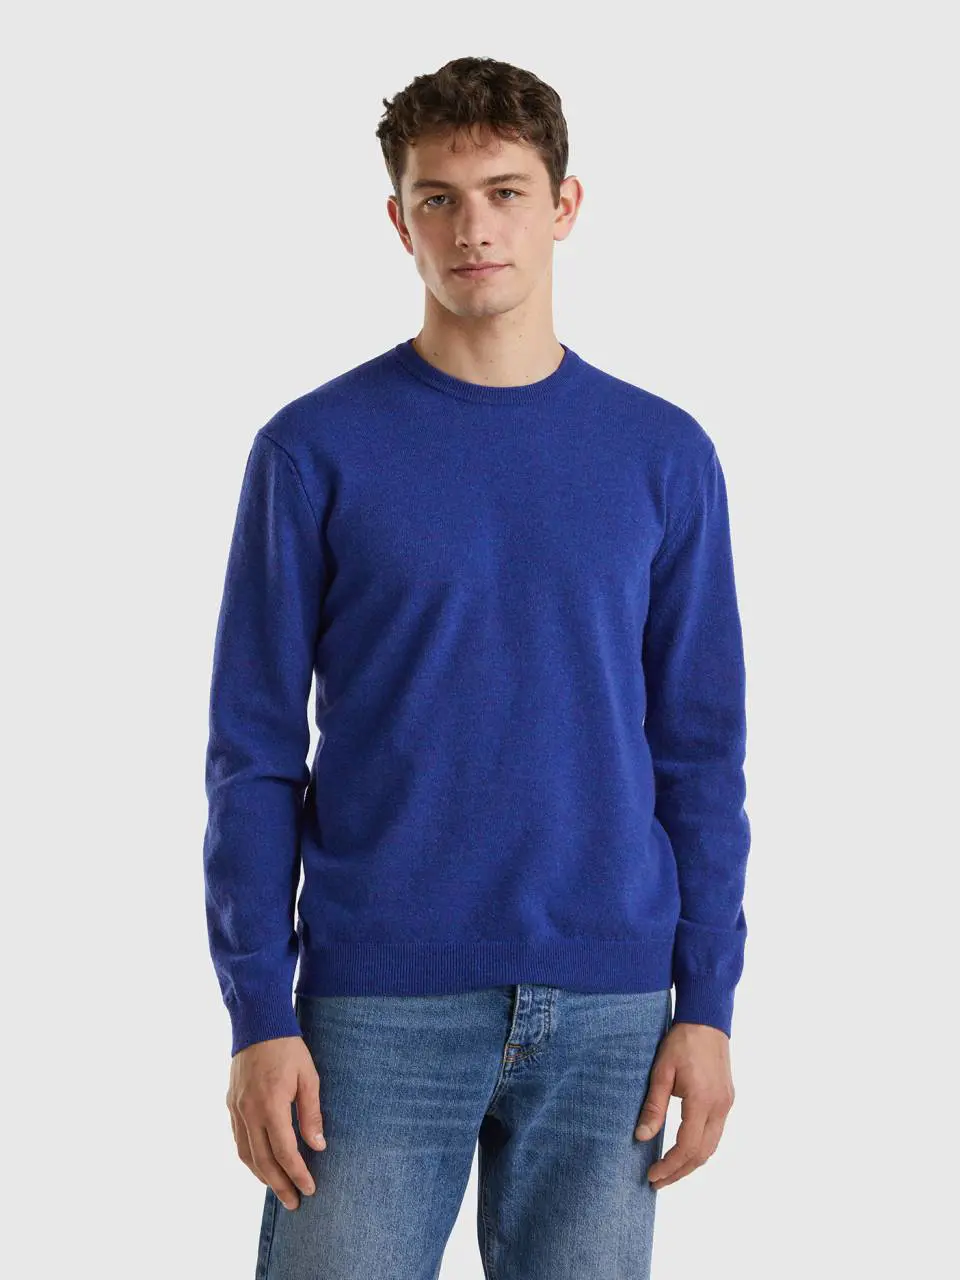 Benetton crew neck sweater in pure virgin wool. 1